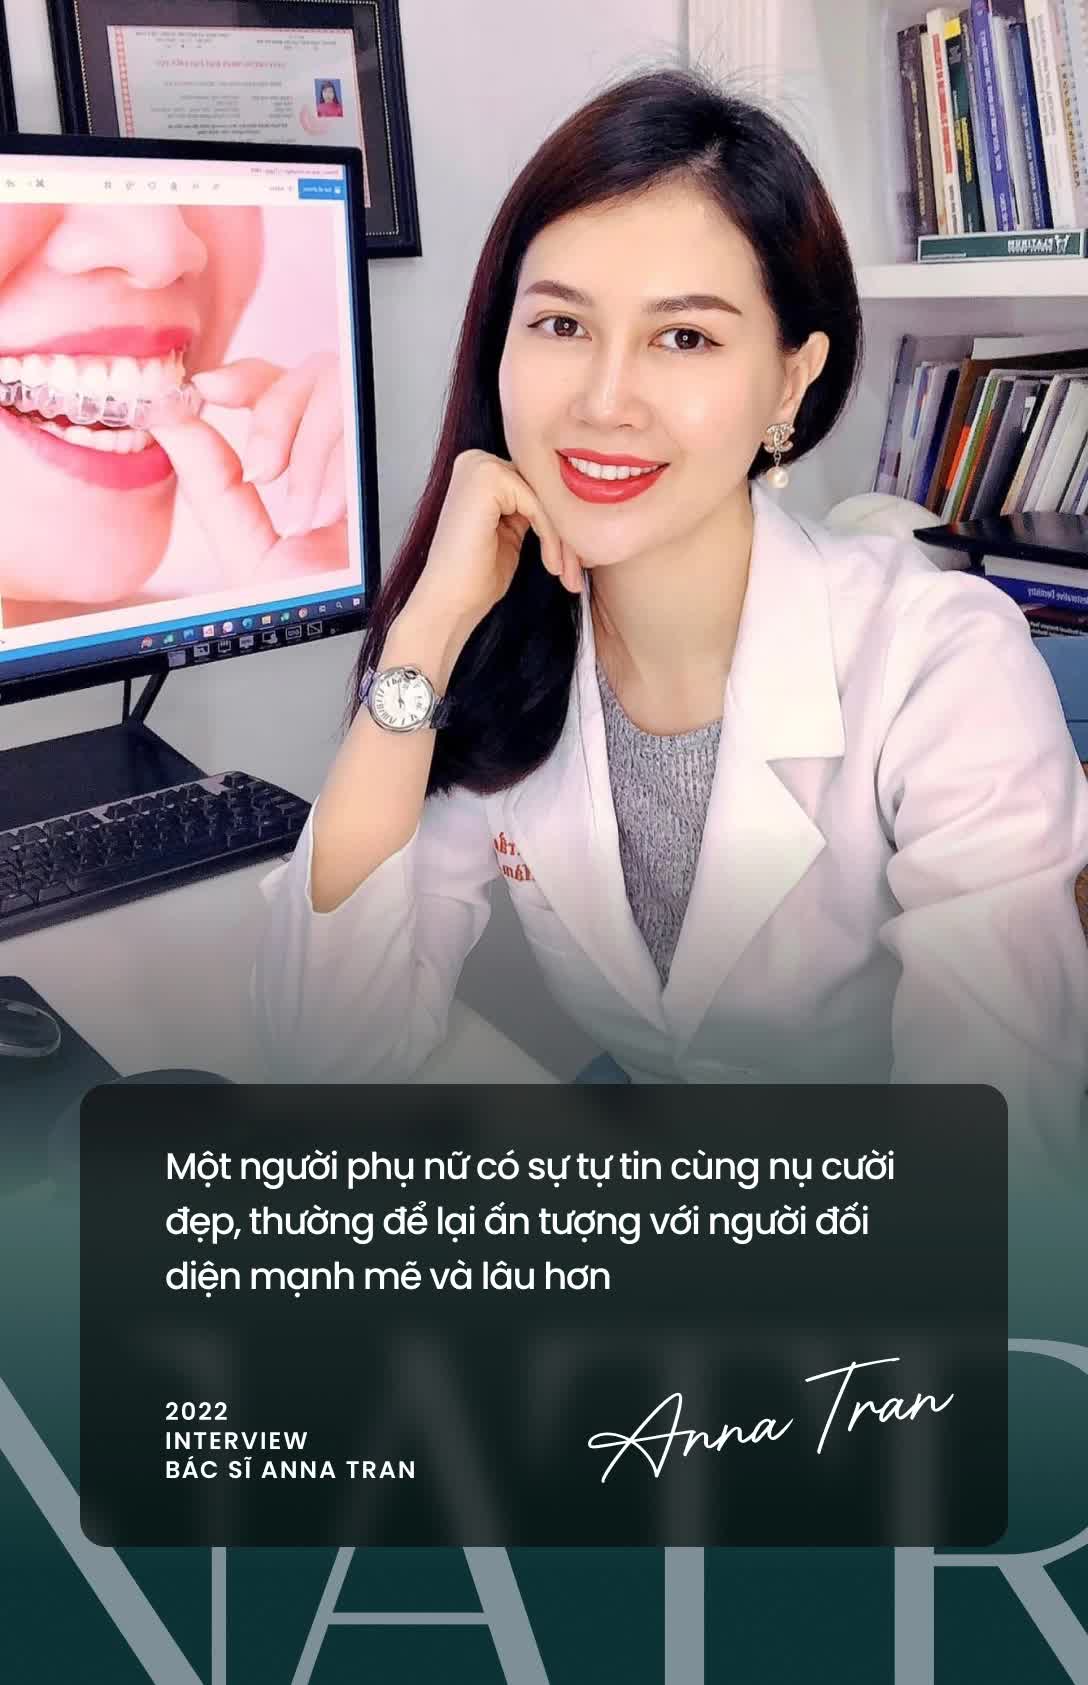 Bác sĩ Anna Trần: 